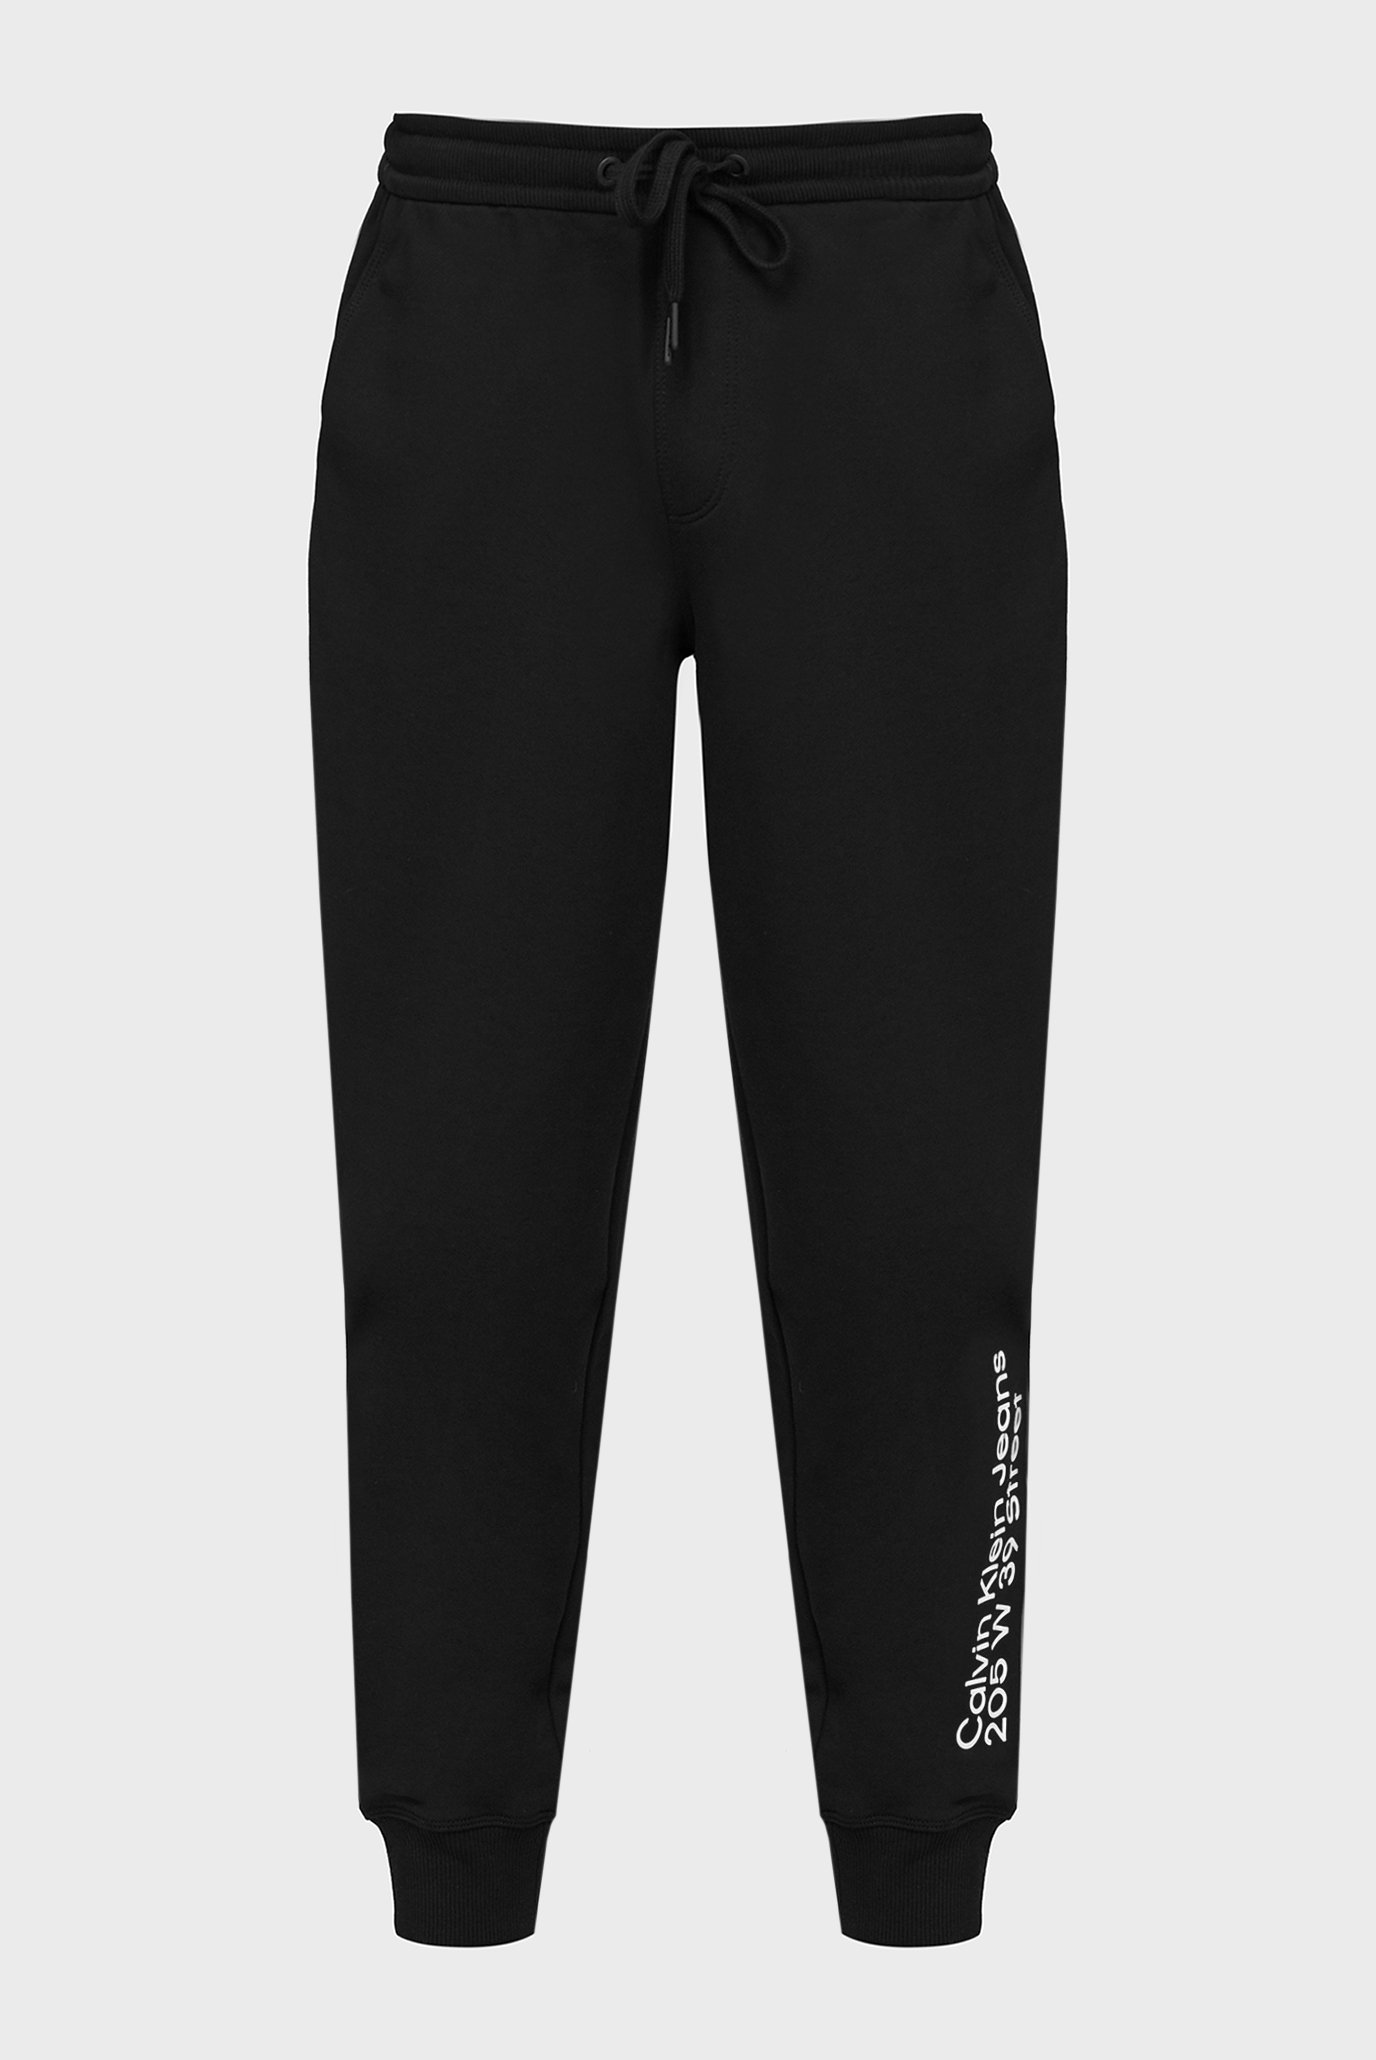 Мужские черные спортивные брюки CK ADDRESS LOGO HWK PANT 1